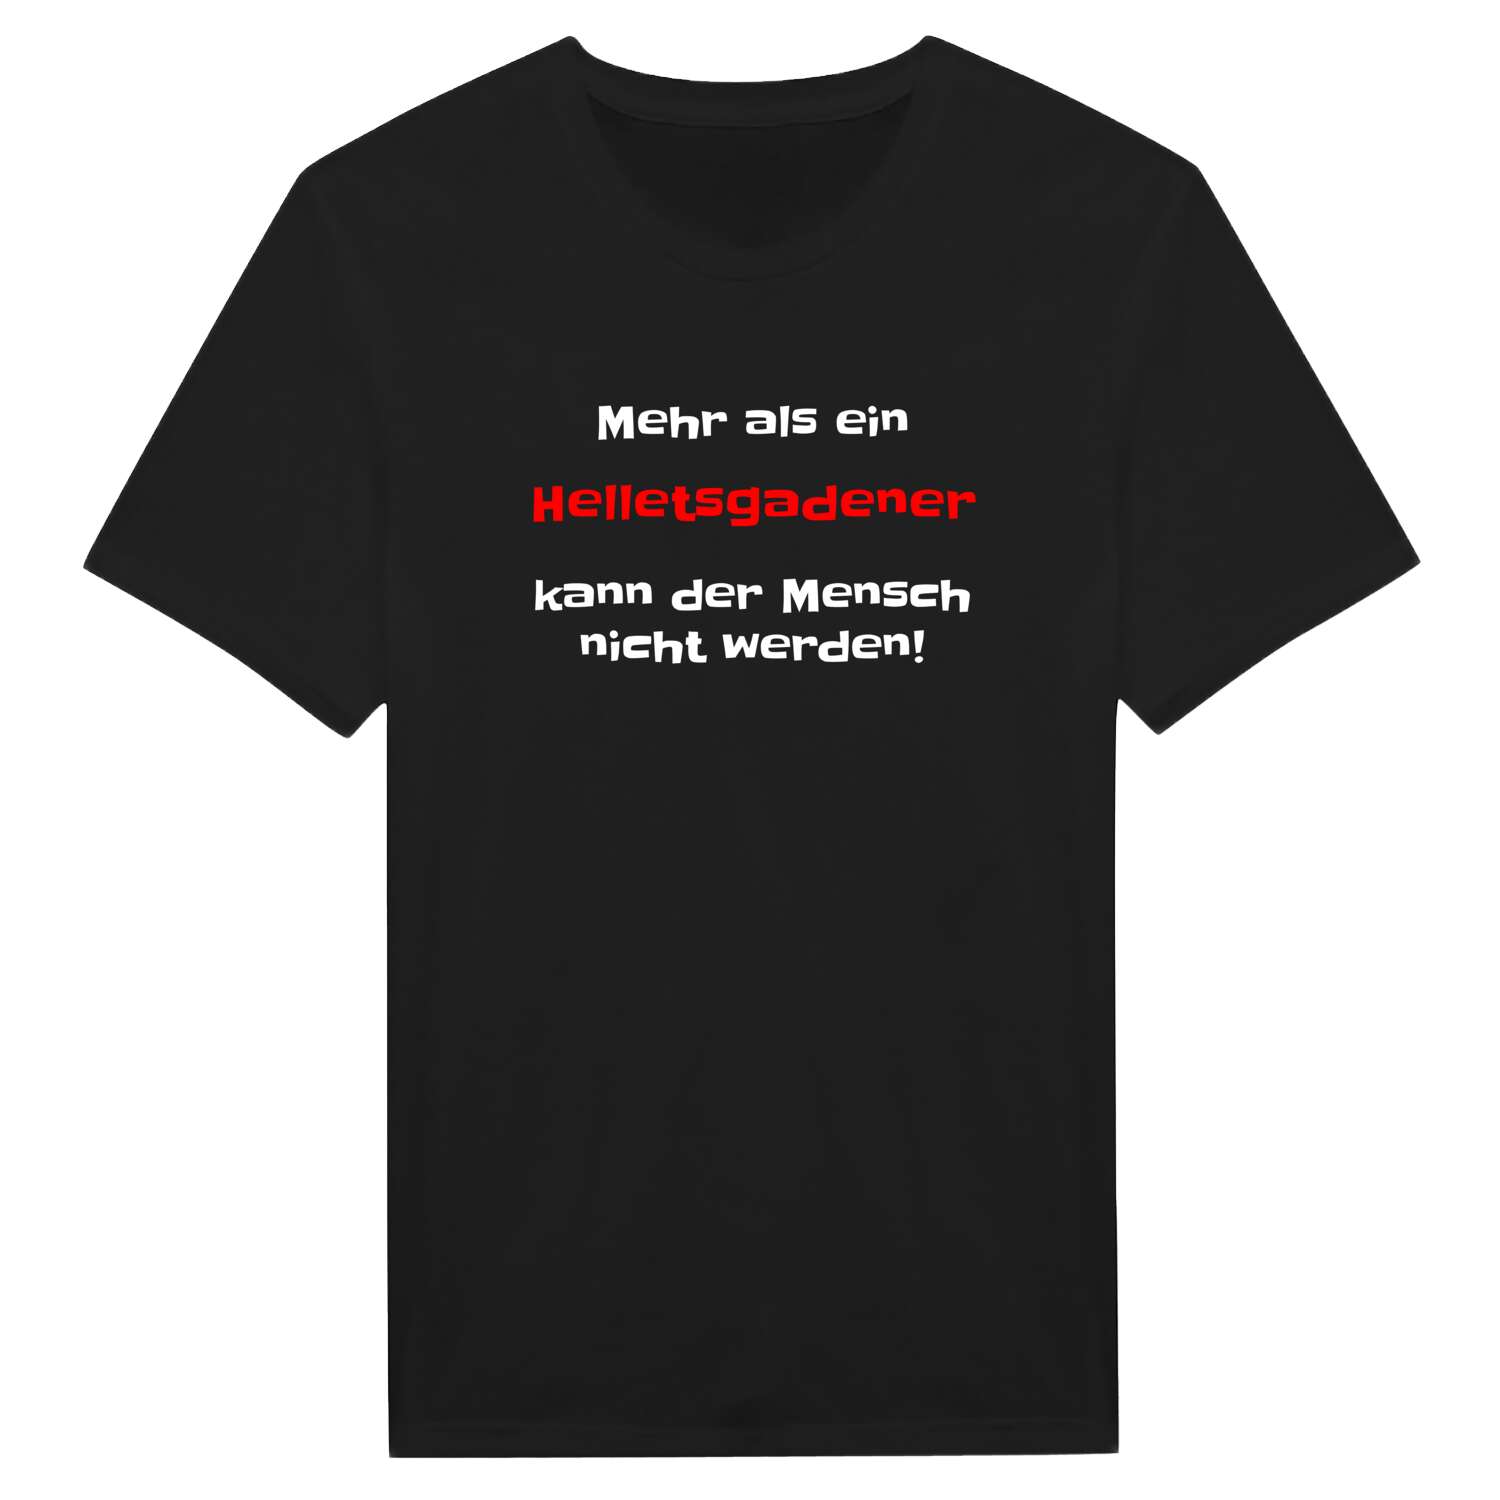 Helletsgaden T-Shirt »Mehr als ein«